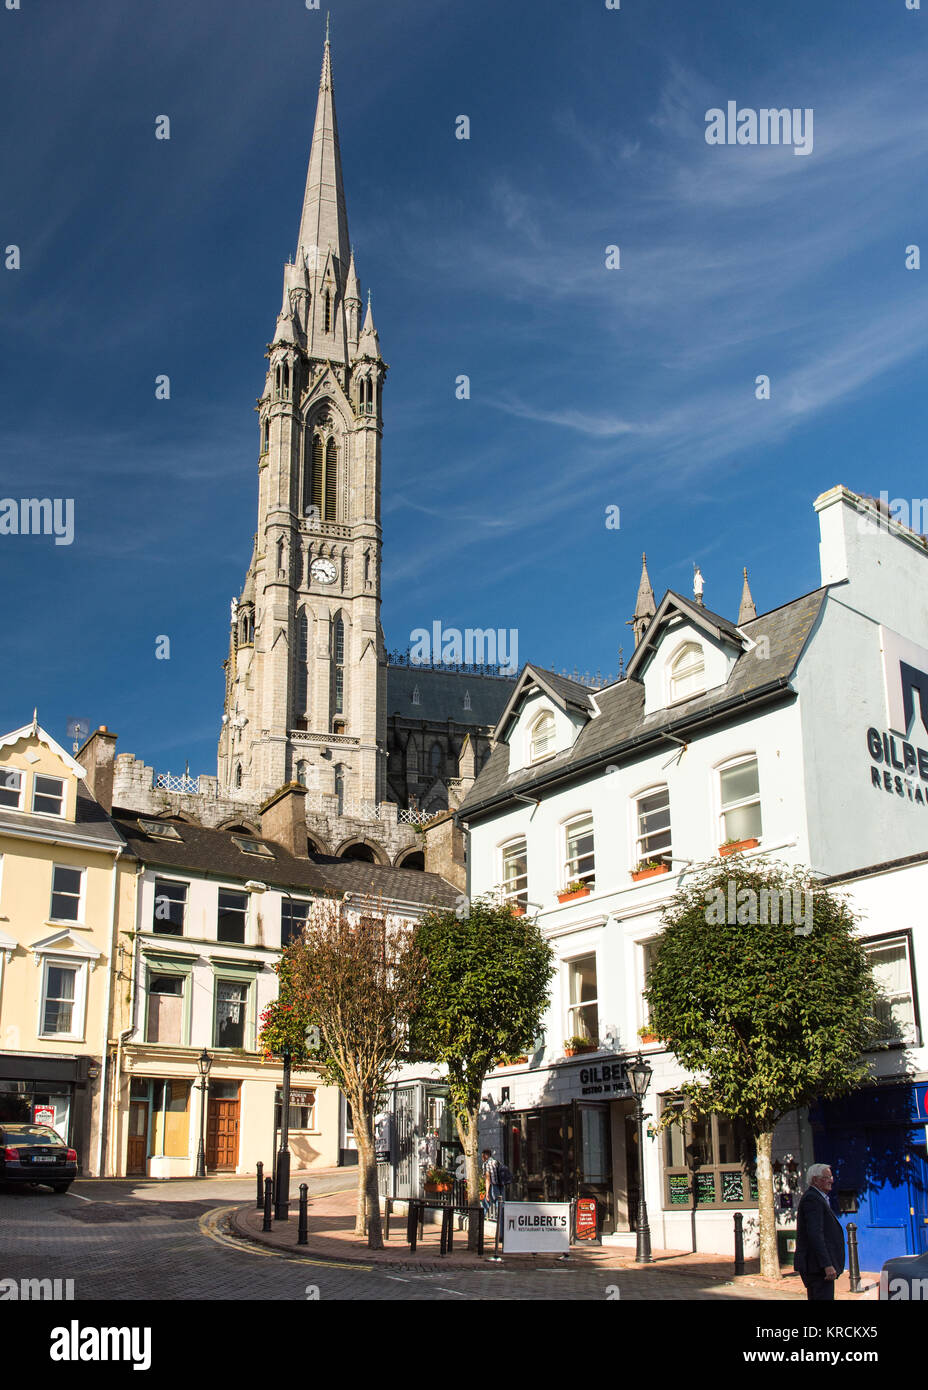 Cork, Irlande - Septembre 15, 2016 : La forme dominante de la cathédrale Saint-colman s'élève au-dessus des rues en terrasses et maisons colorées de la petite pour Banque D'Images